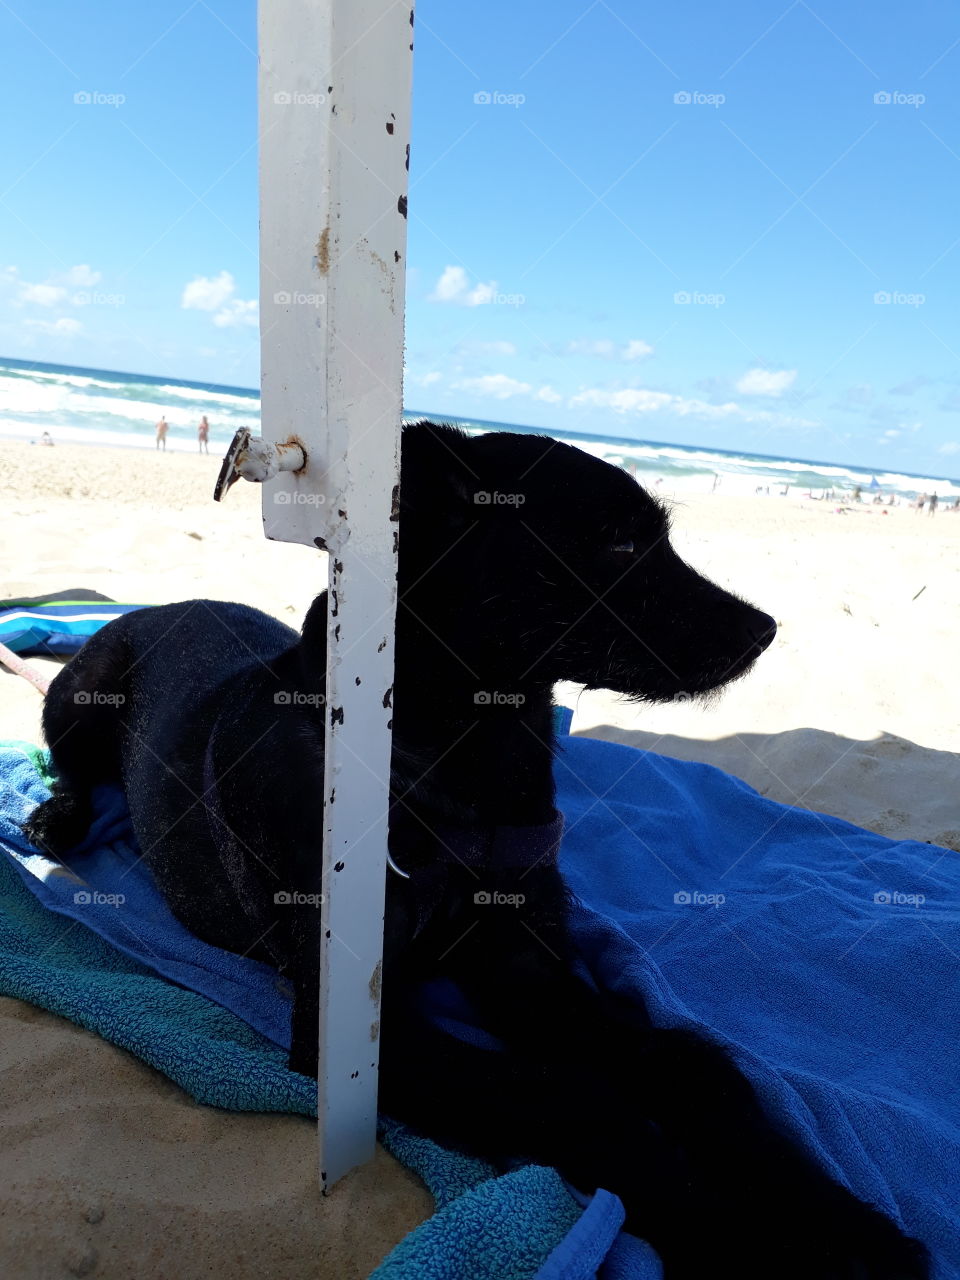 my dog on the beach